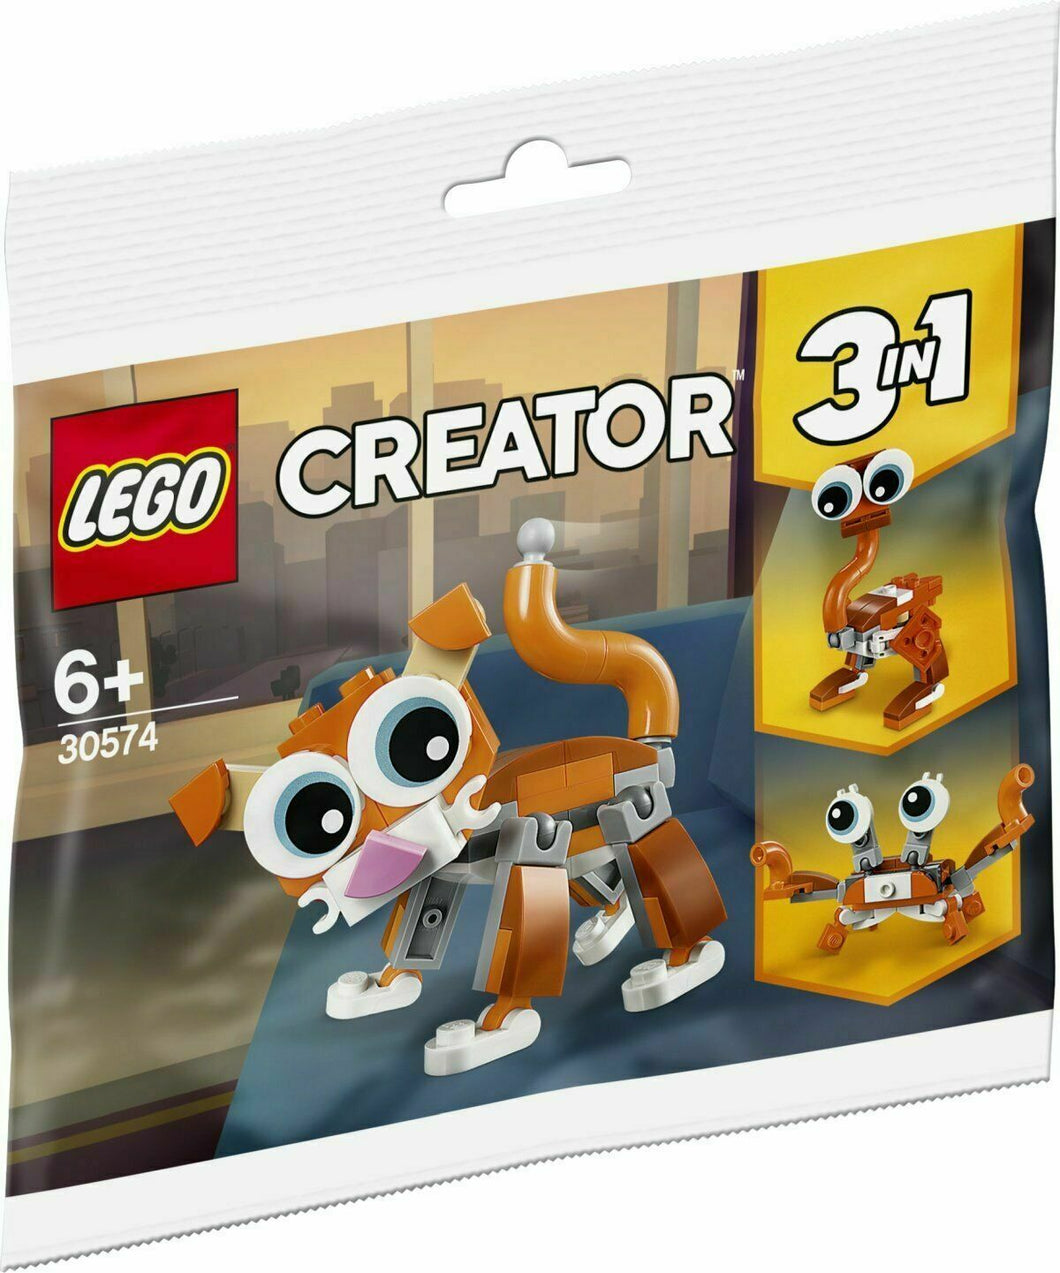 LEGO CREATOR Gatto 30574 POLYBAG